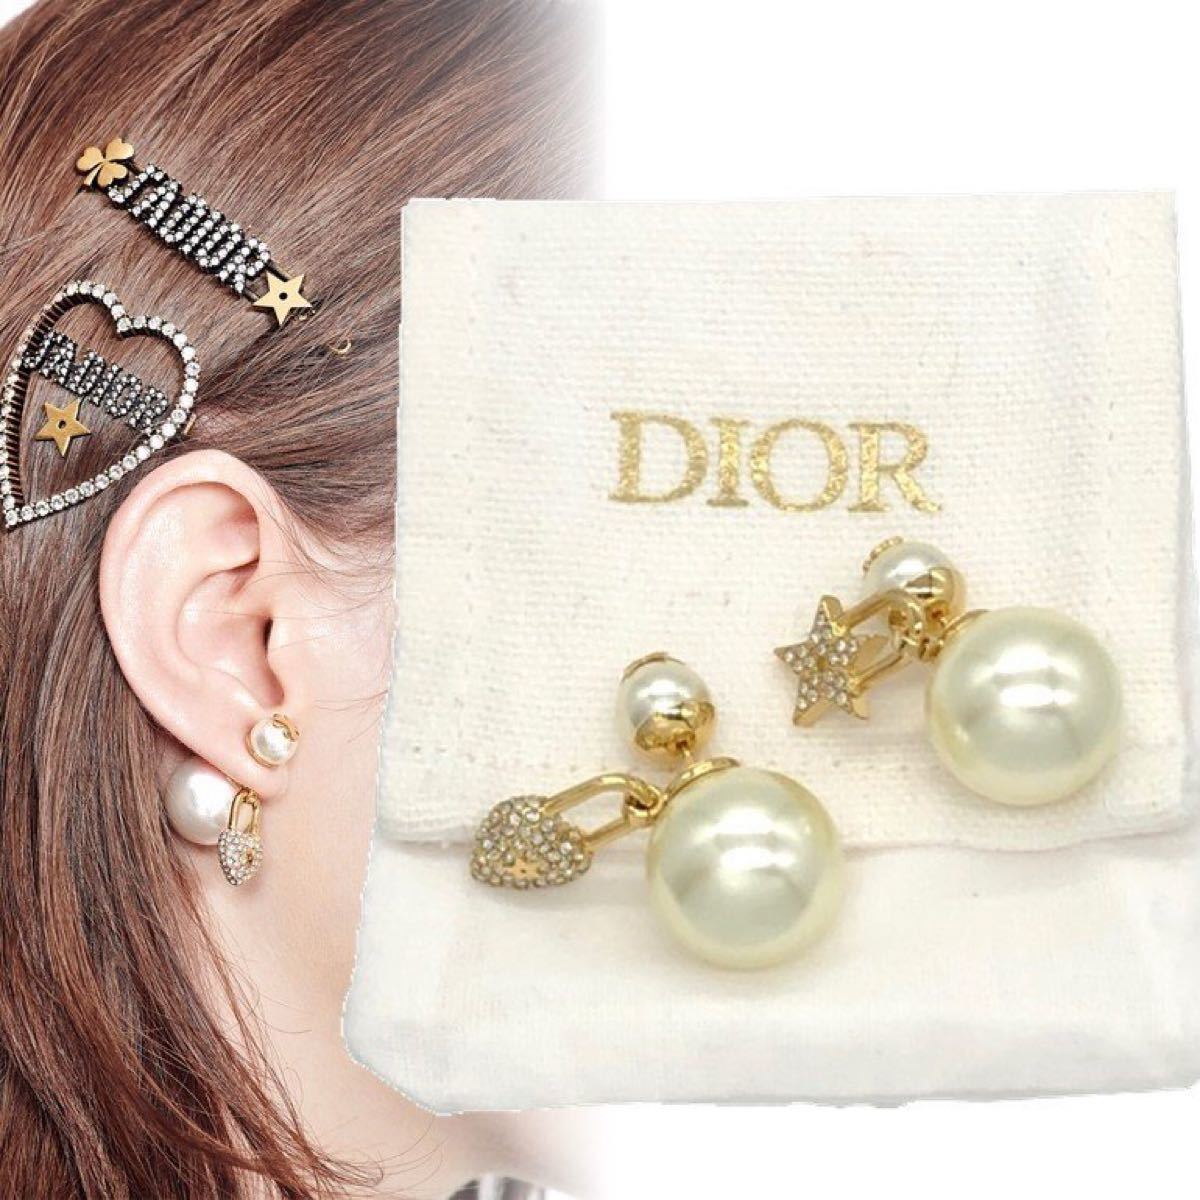 Christian Dior トライバルピアス tribals earring 星とハートモチーフ